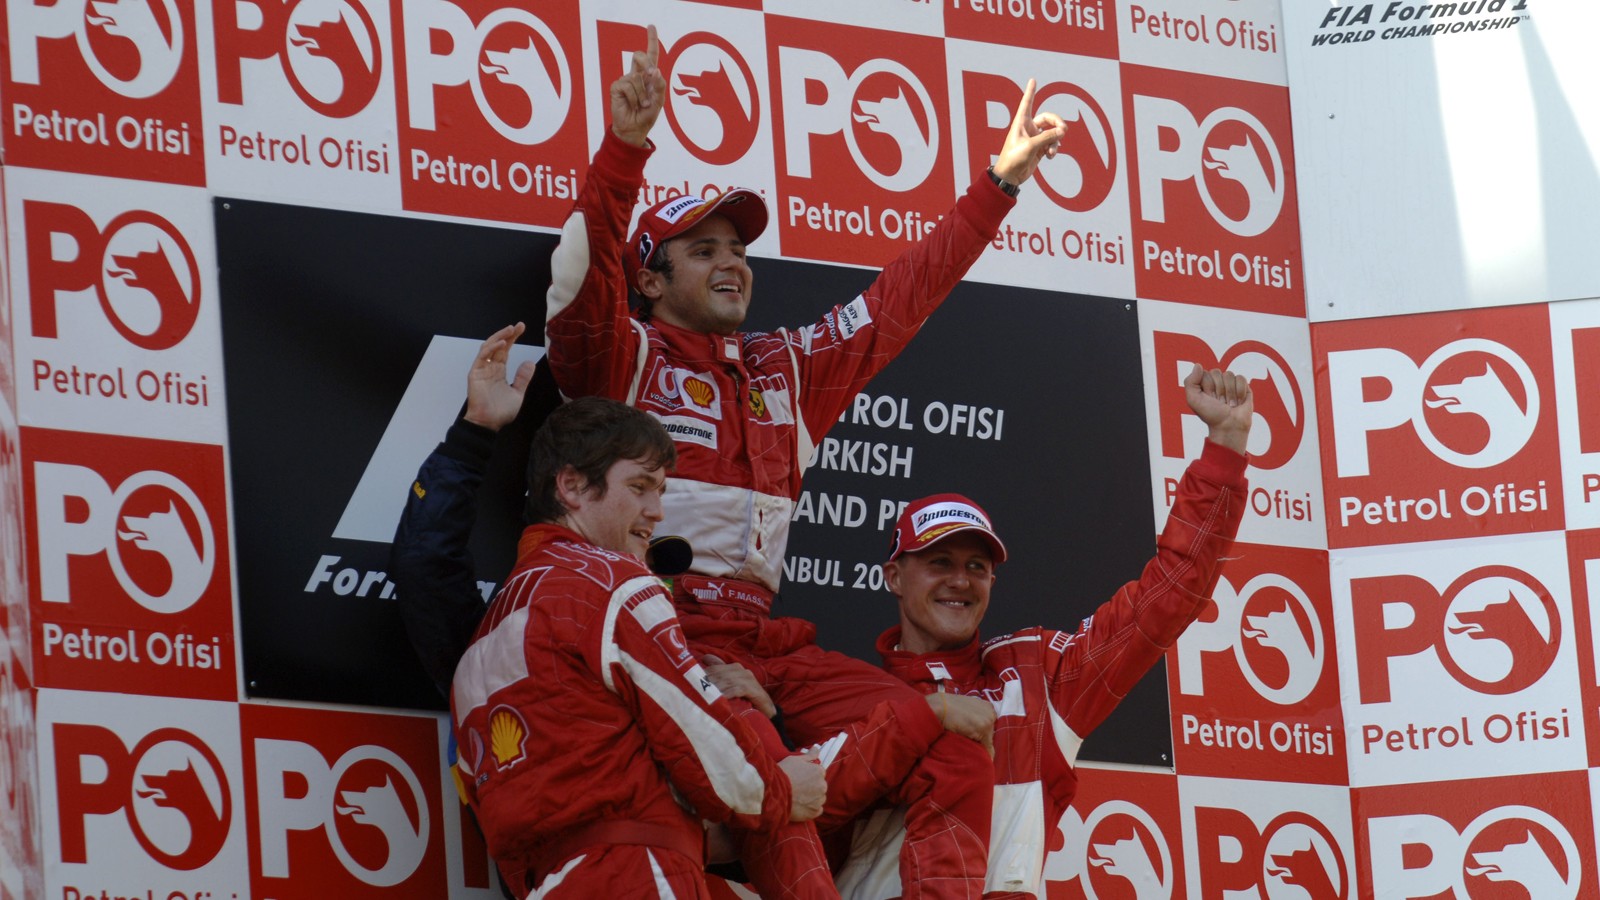 GP Turecka 2006 hostila první Massovo vítězství a souboj Schumachera s Alonsem